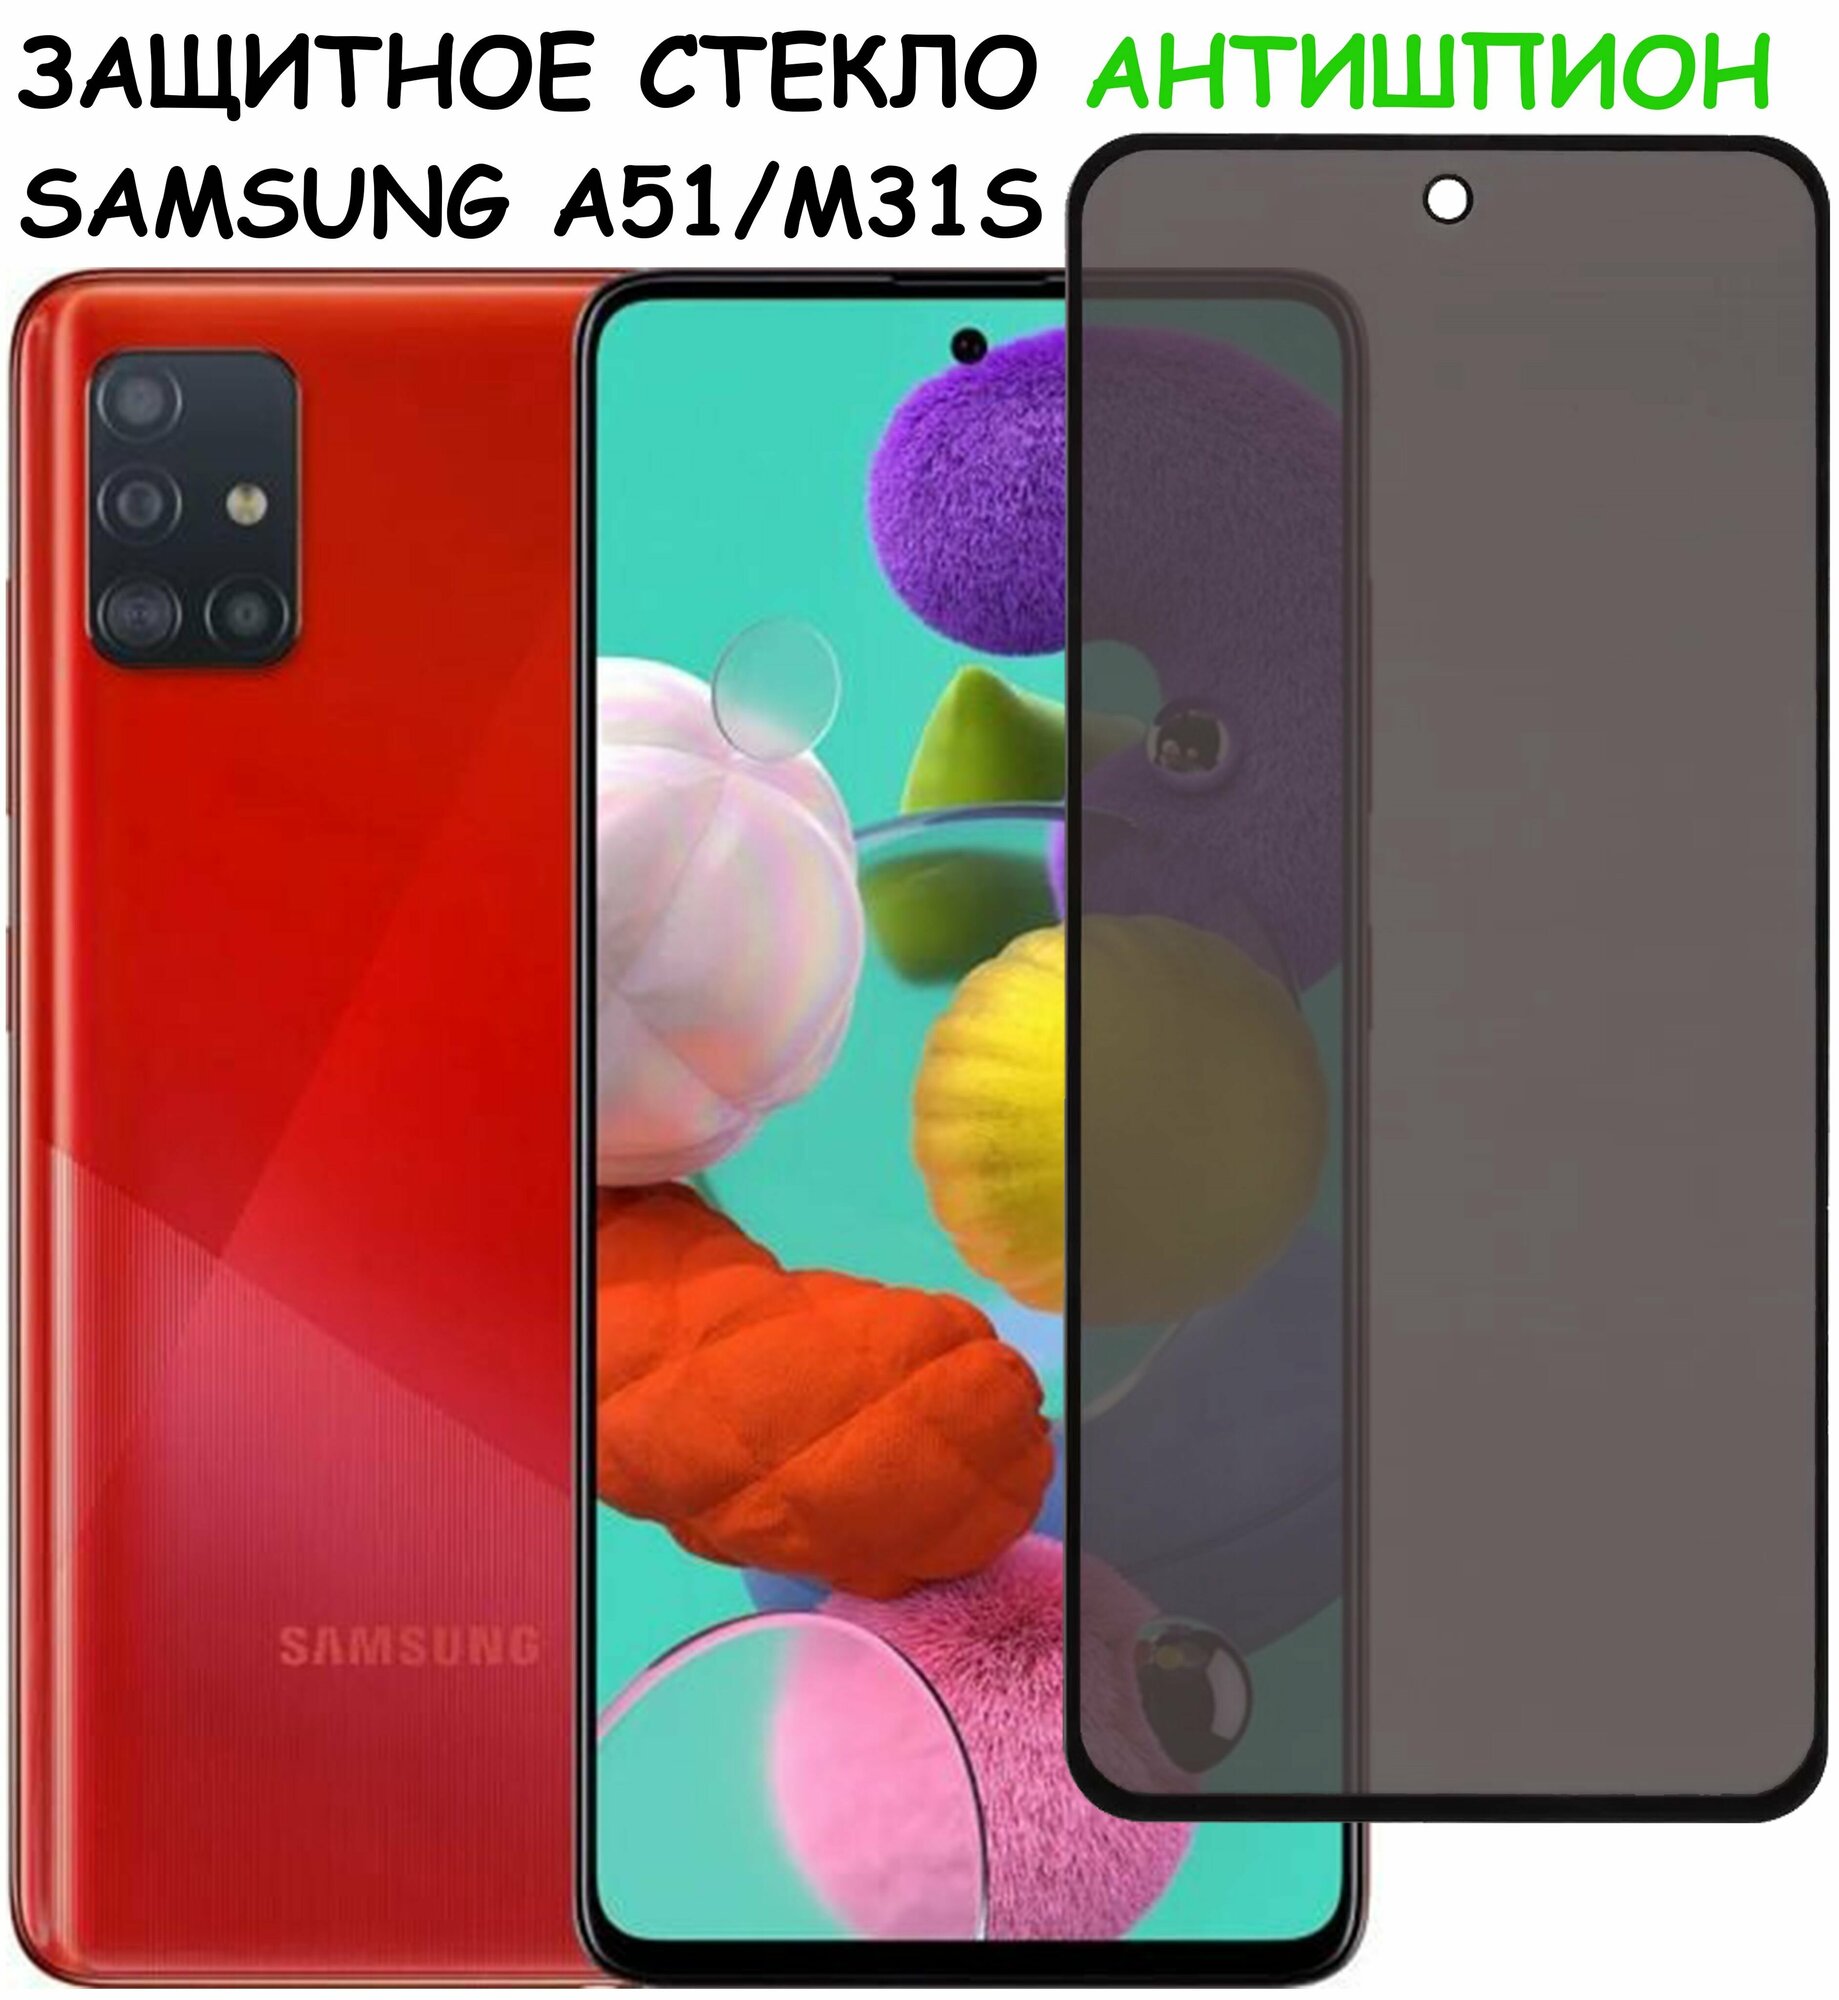 Защитное стекло "Антишпион" для Samsung Galaxy A51/M31s (A515F/M317F) / самсунг а51 / М31С Черное (Закалённое полное покрытие)